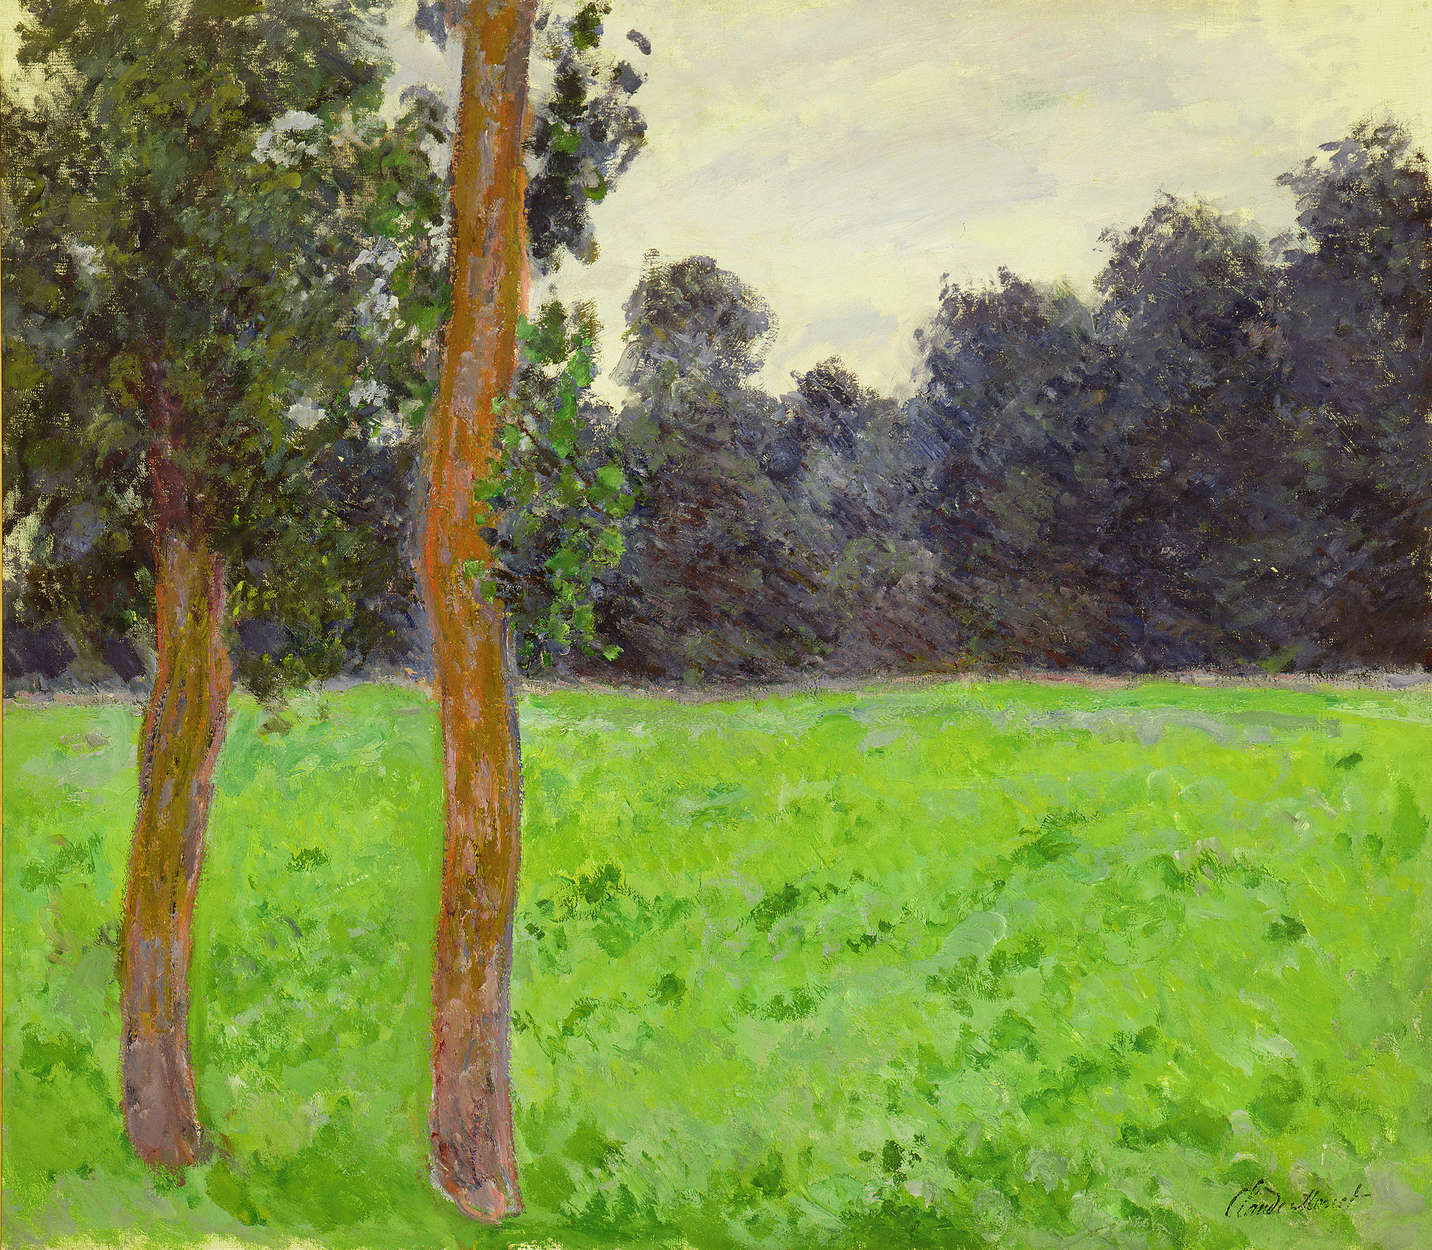             Muurschildering "Twee bomen in een weide" van Claude Monet
        